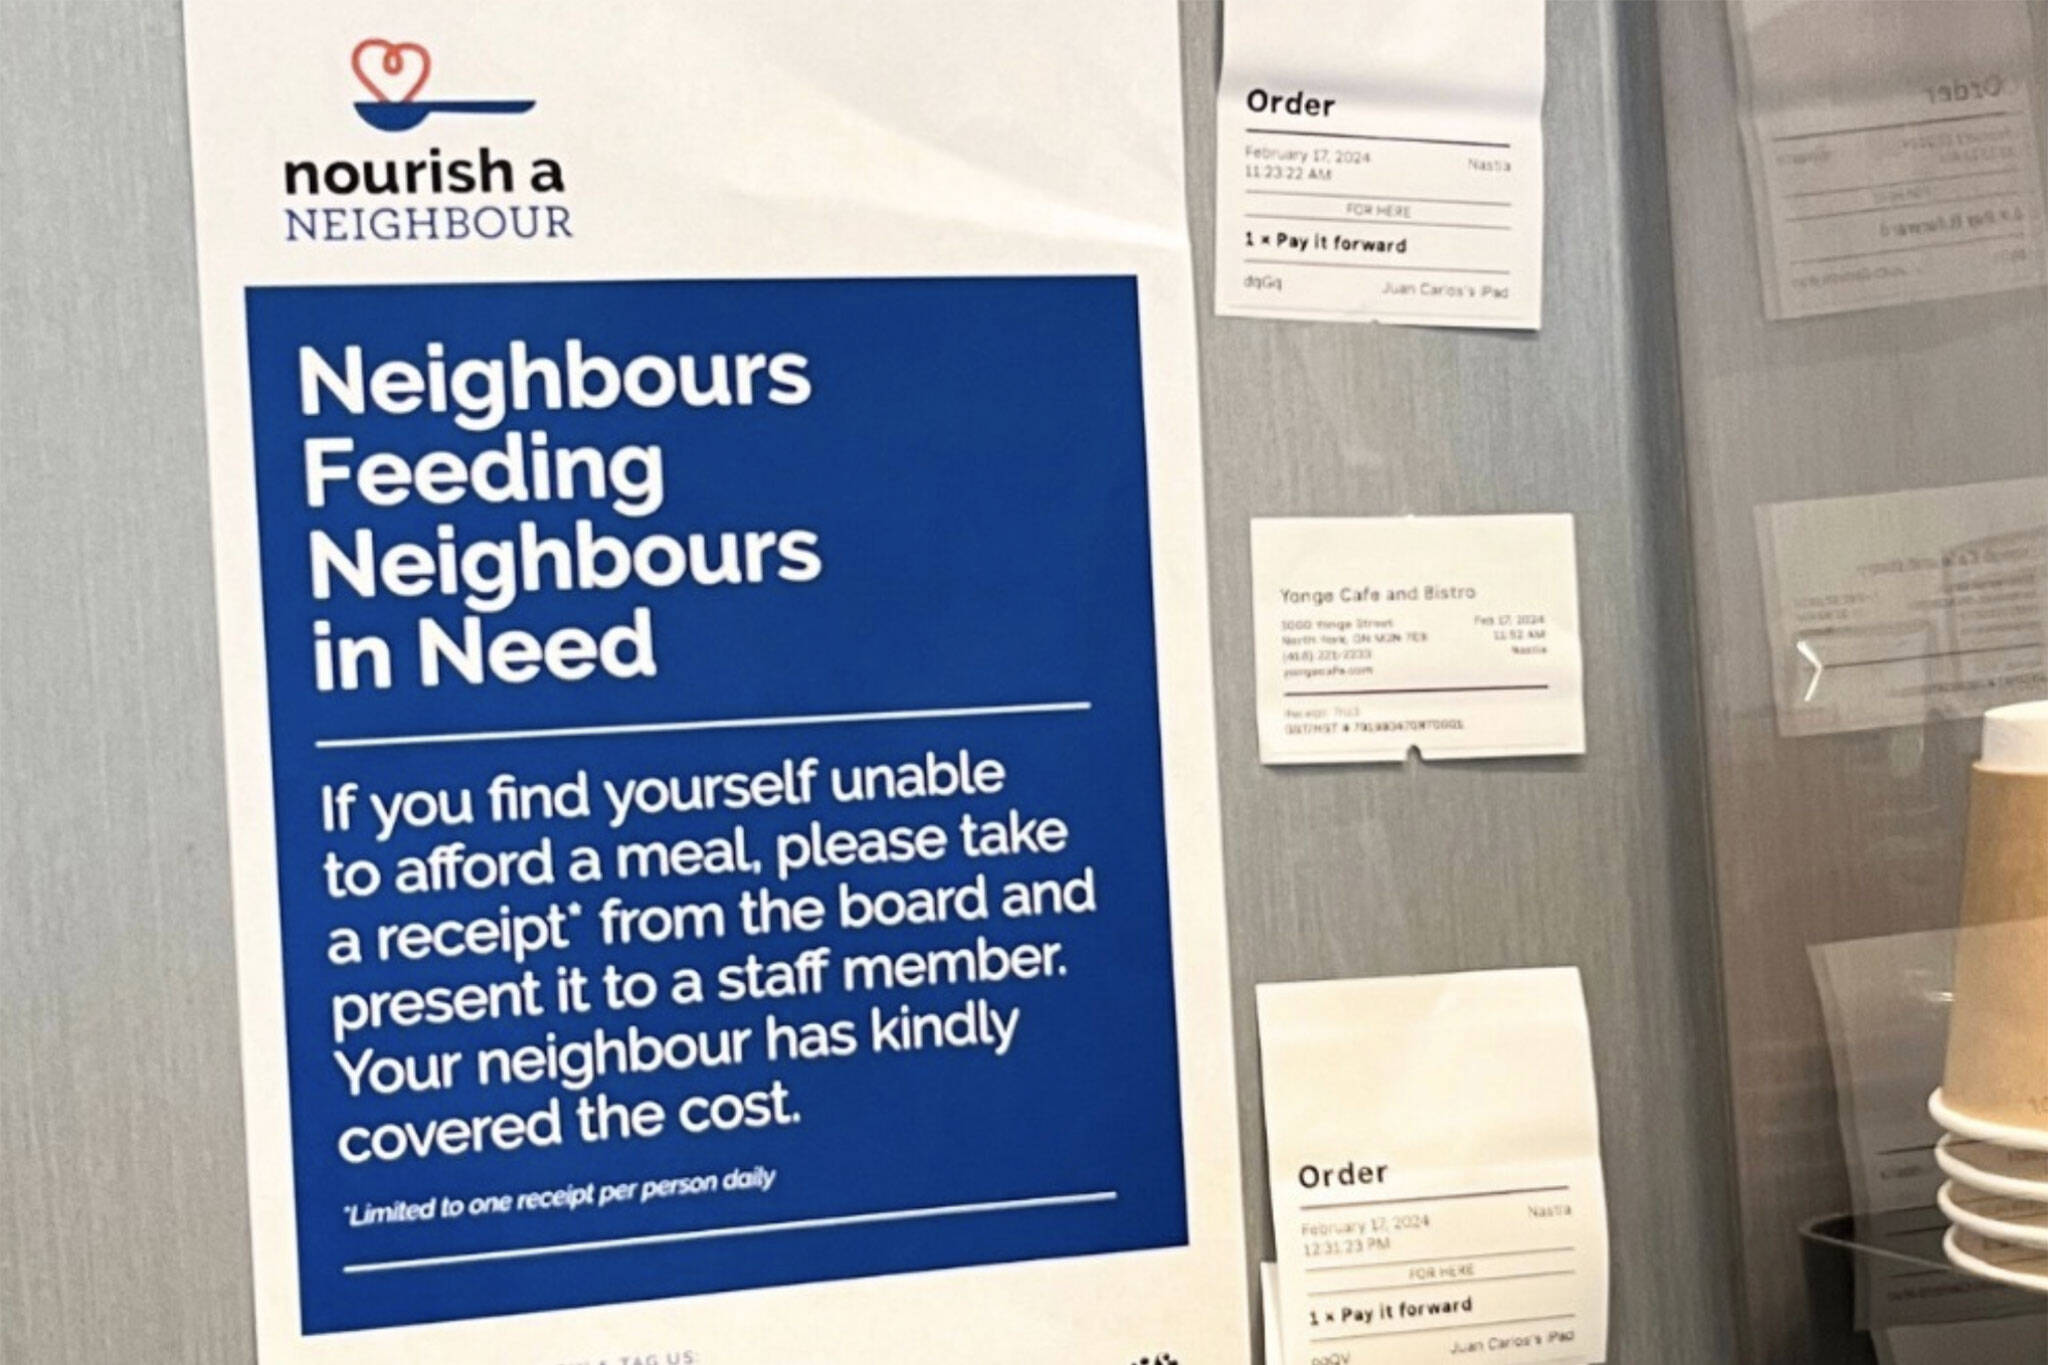 nourish a neighbour